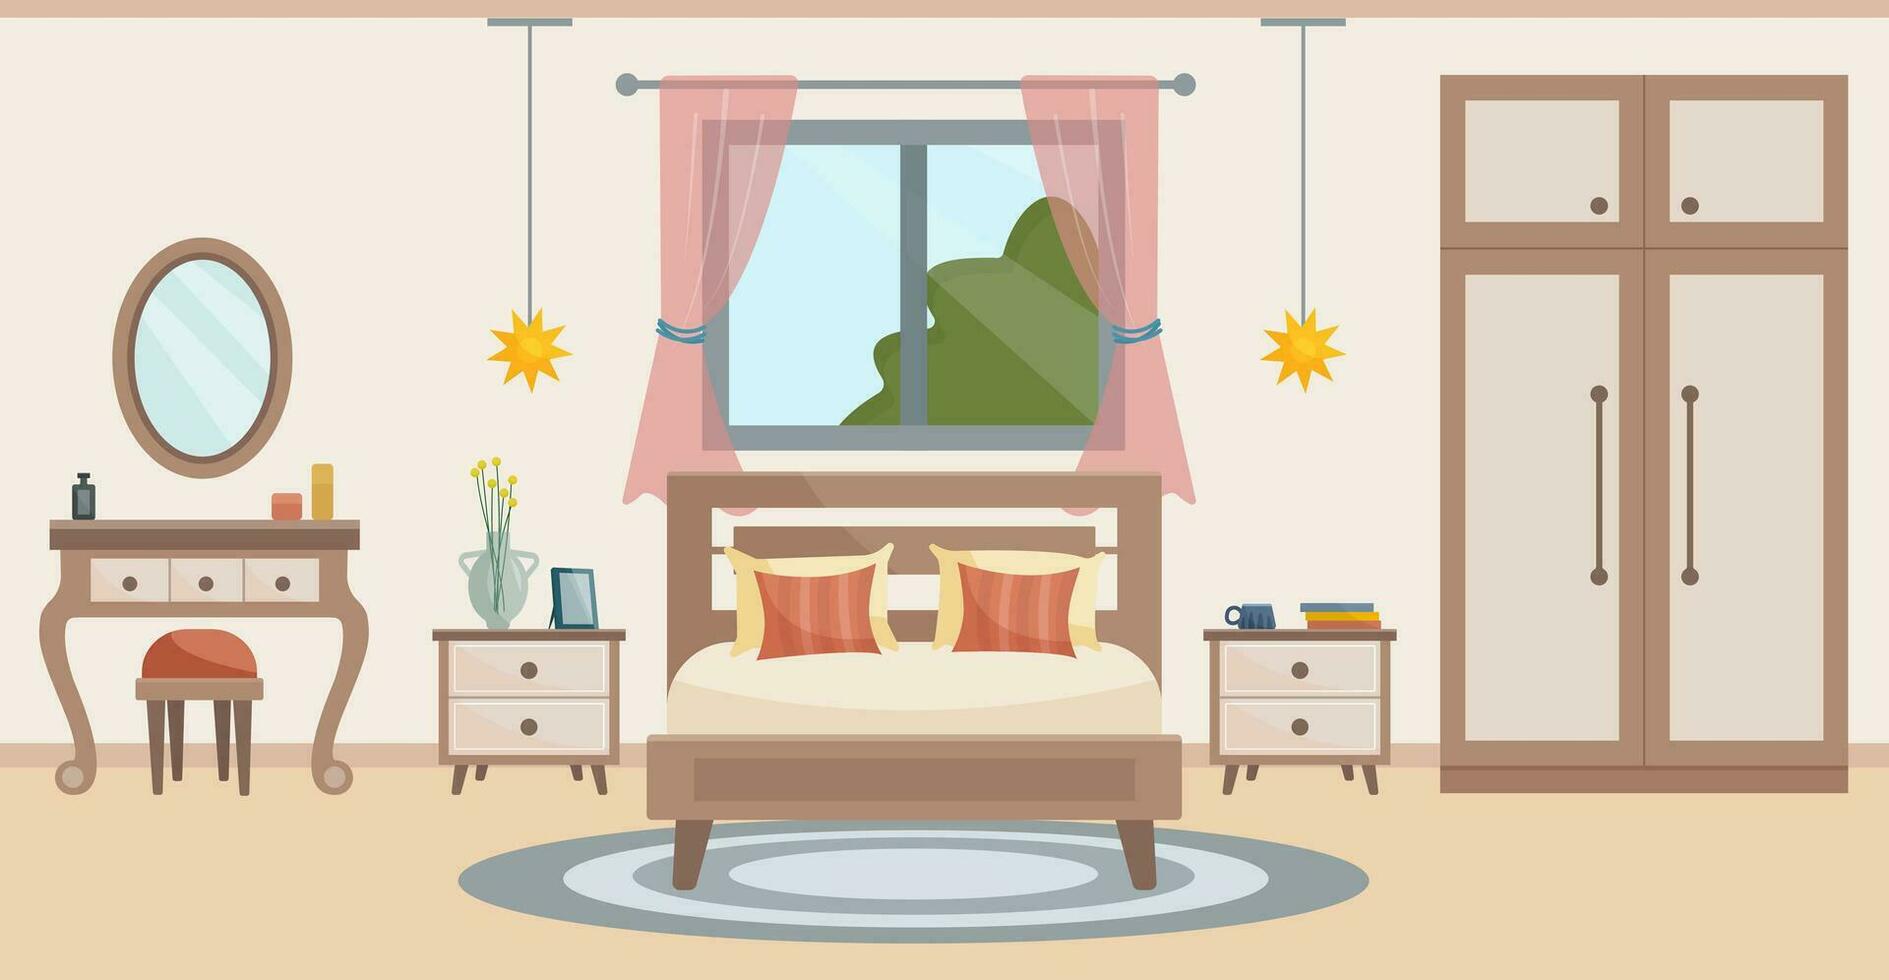 acolhedor quarto. quarto interior cama, vestir mesa com cadeira, tapete, em vaso plantas, guarda-roupa, janela com uma verão visualizar. interior conceito. vetor plano ilustração.